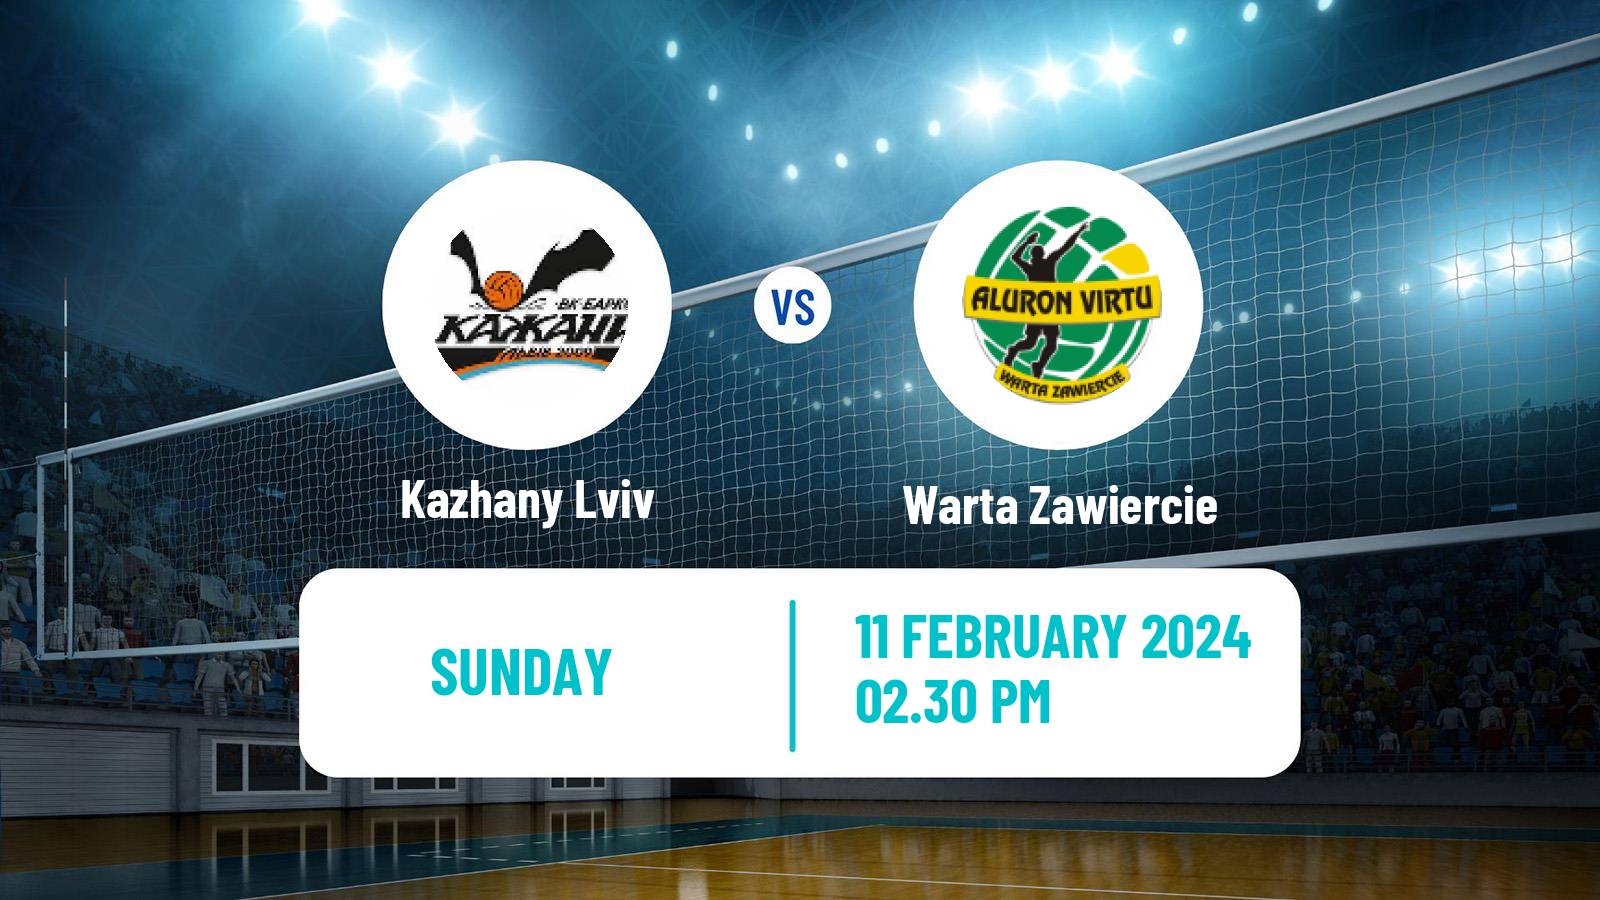 Volleyball Polish PlusLiga Kazhany Lviv - Warta Zawiercie